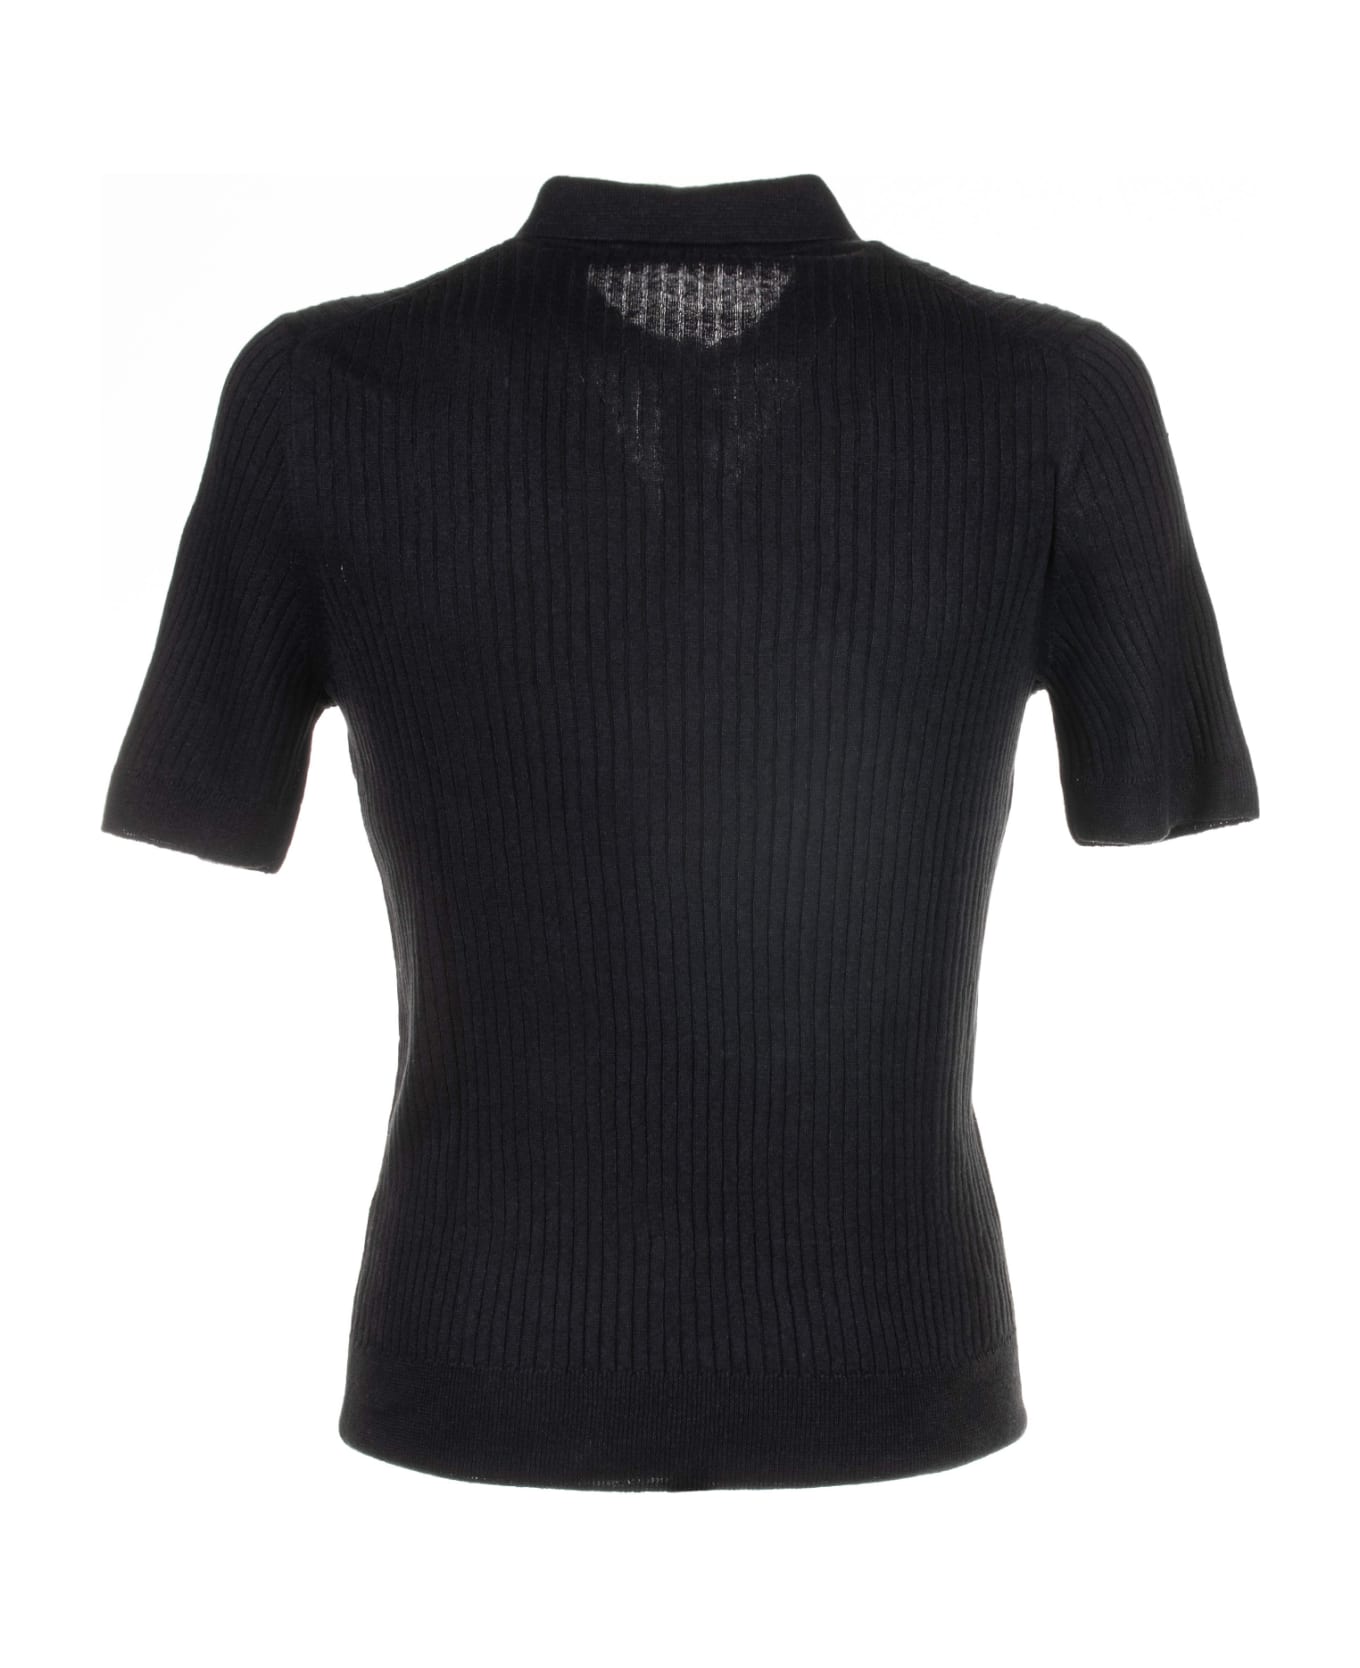 Tagliatore Black Short-sleeved Polo Shirt - NERO